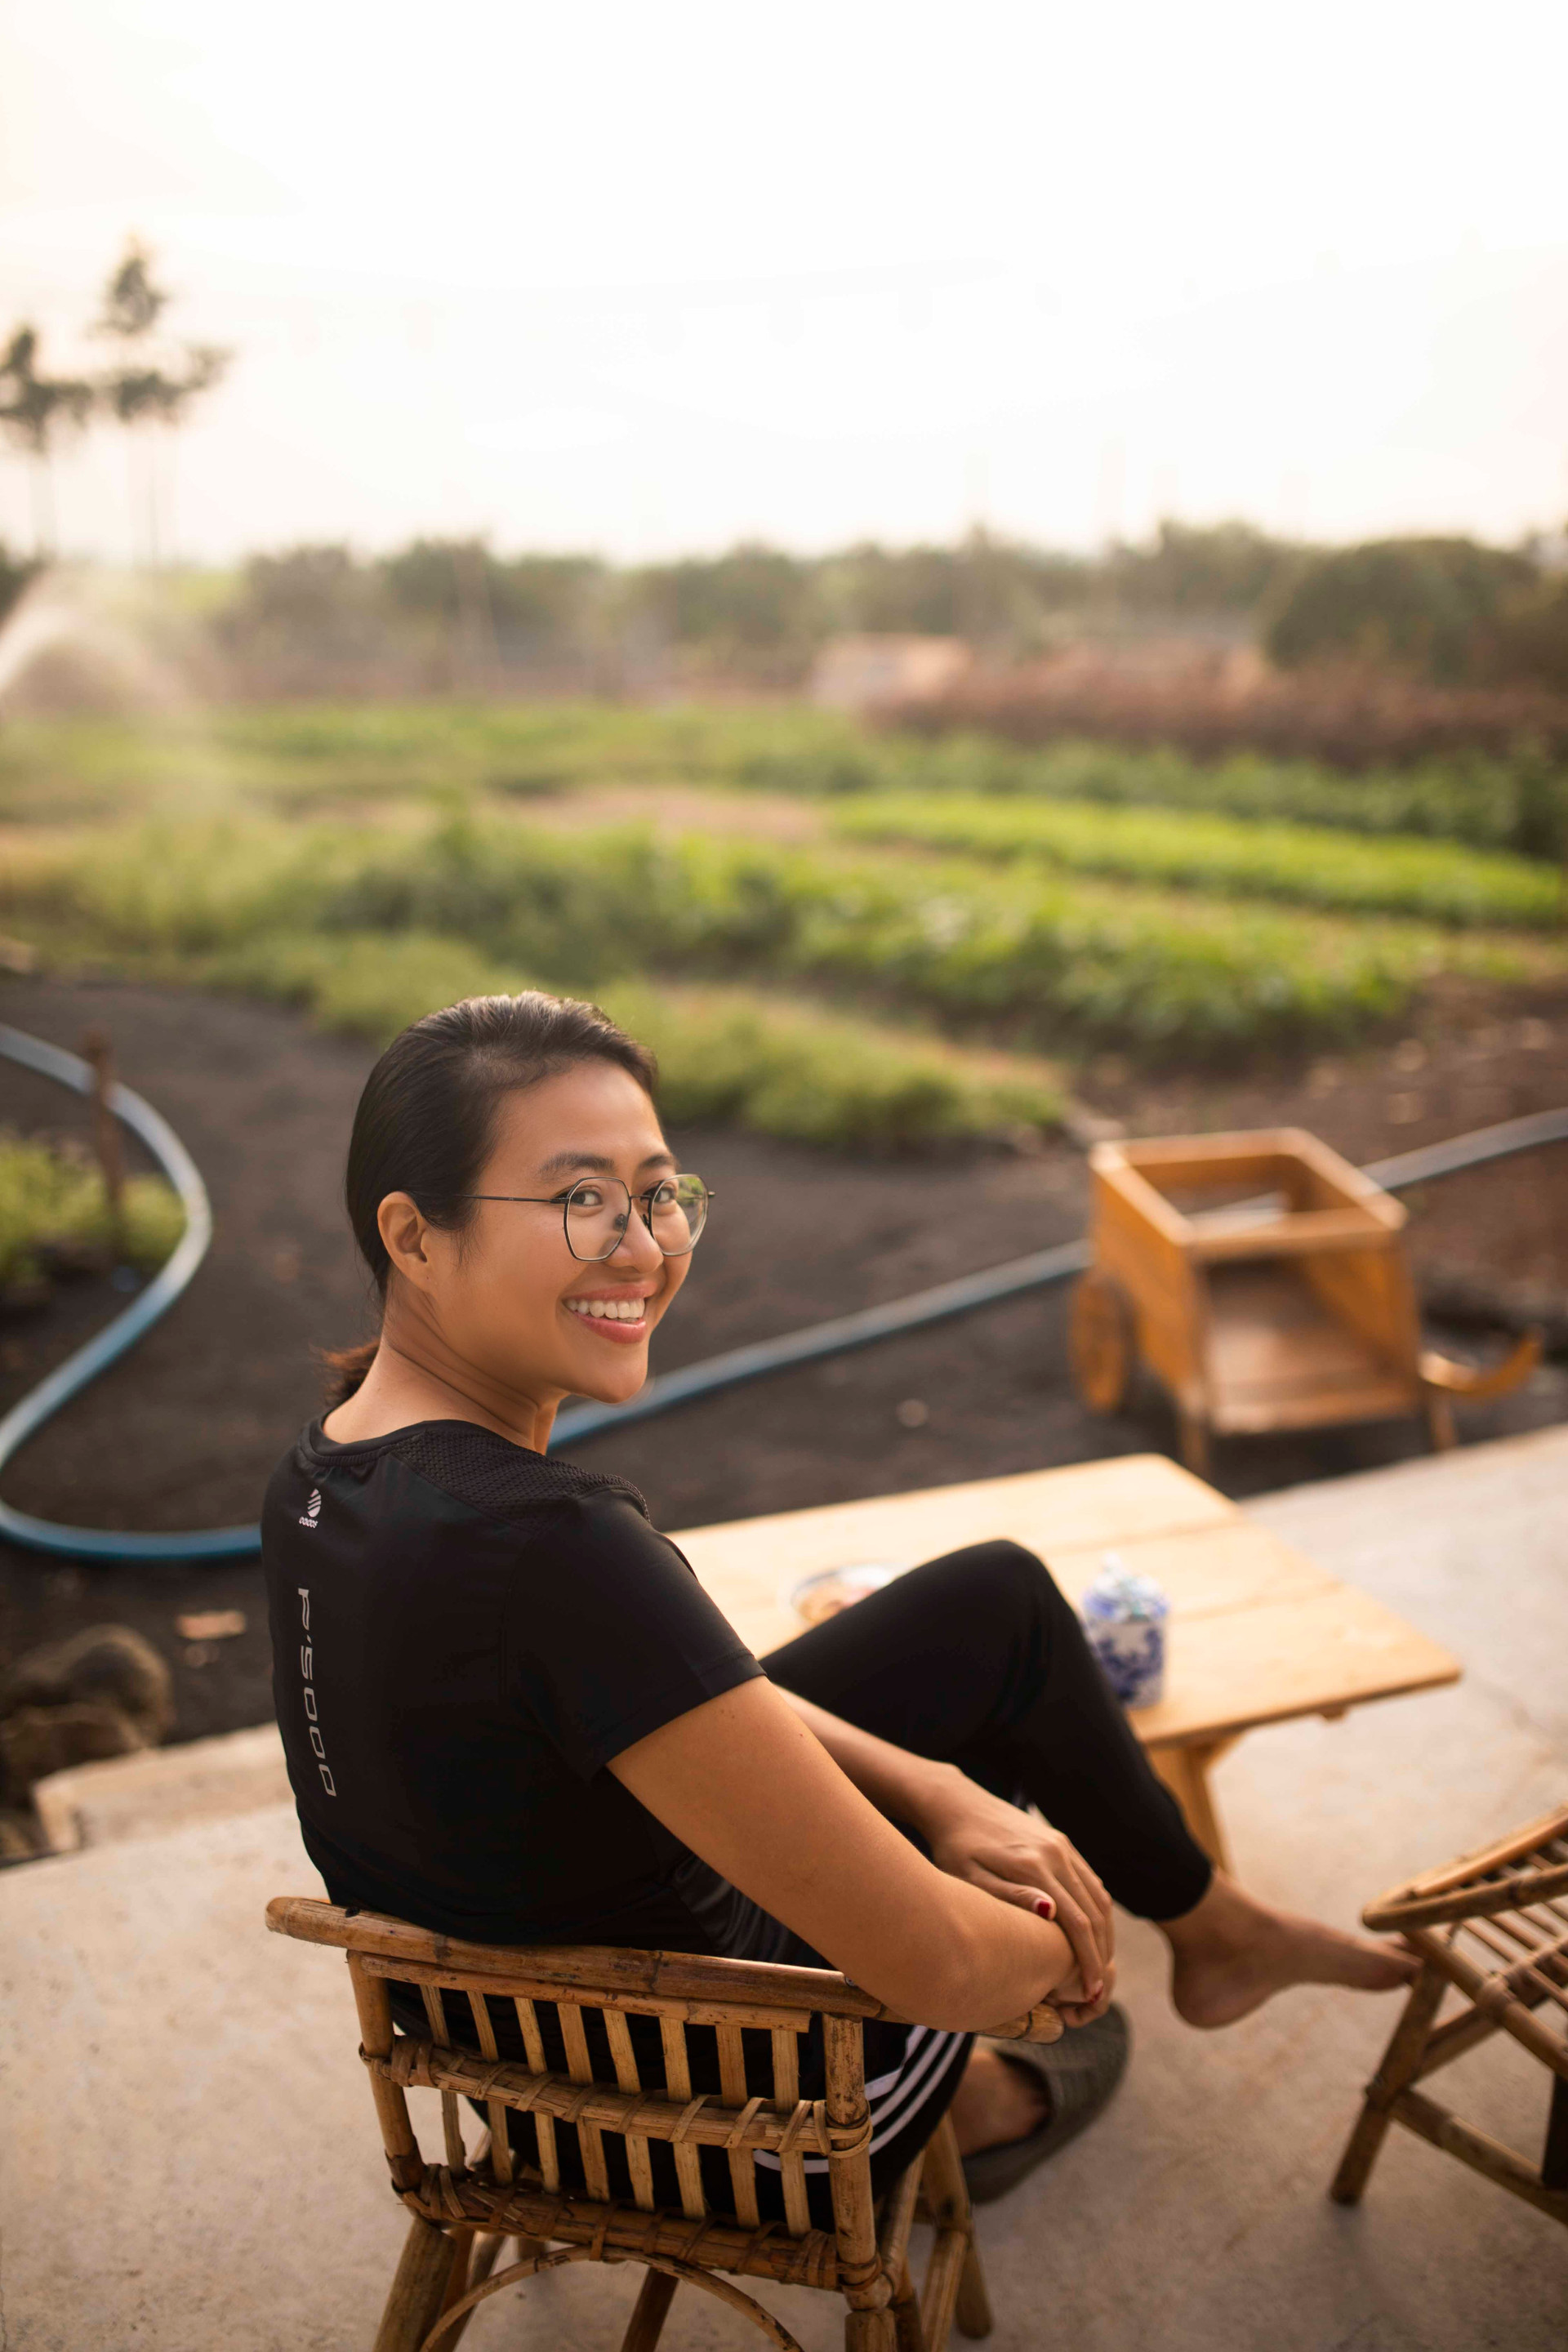 Nữ nhiếp ảnh Sài Gòn bỏ phố về quê, tự làm khu vườn 1ha thơ mộng - 15